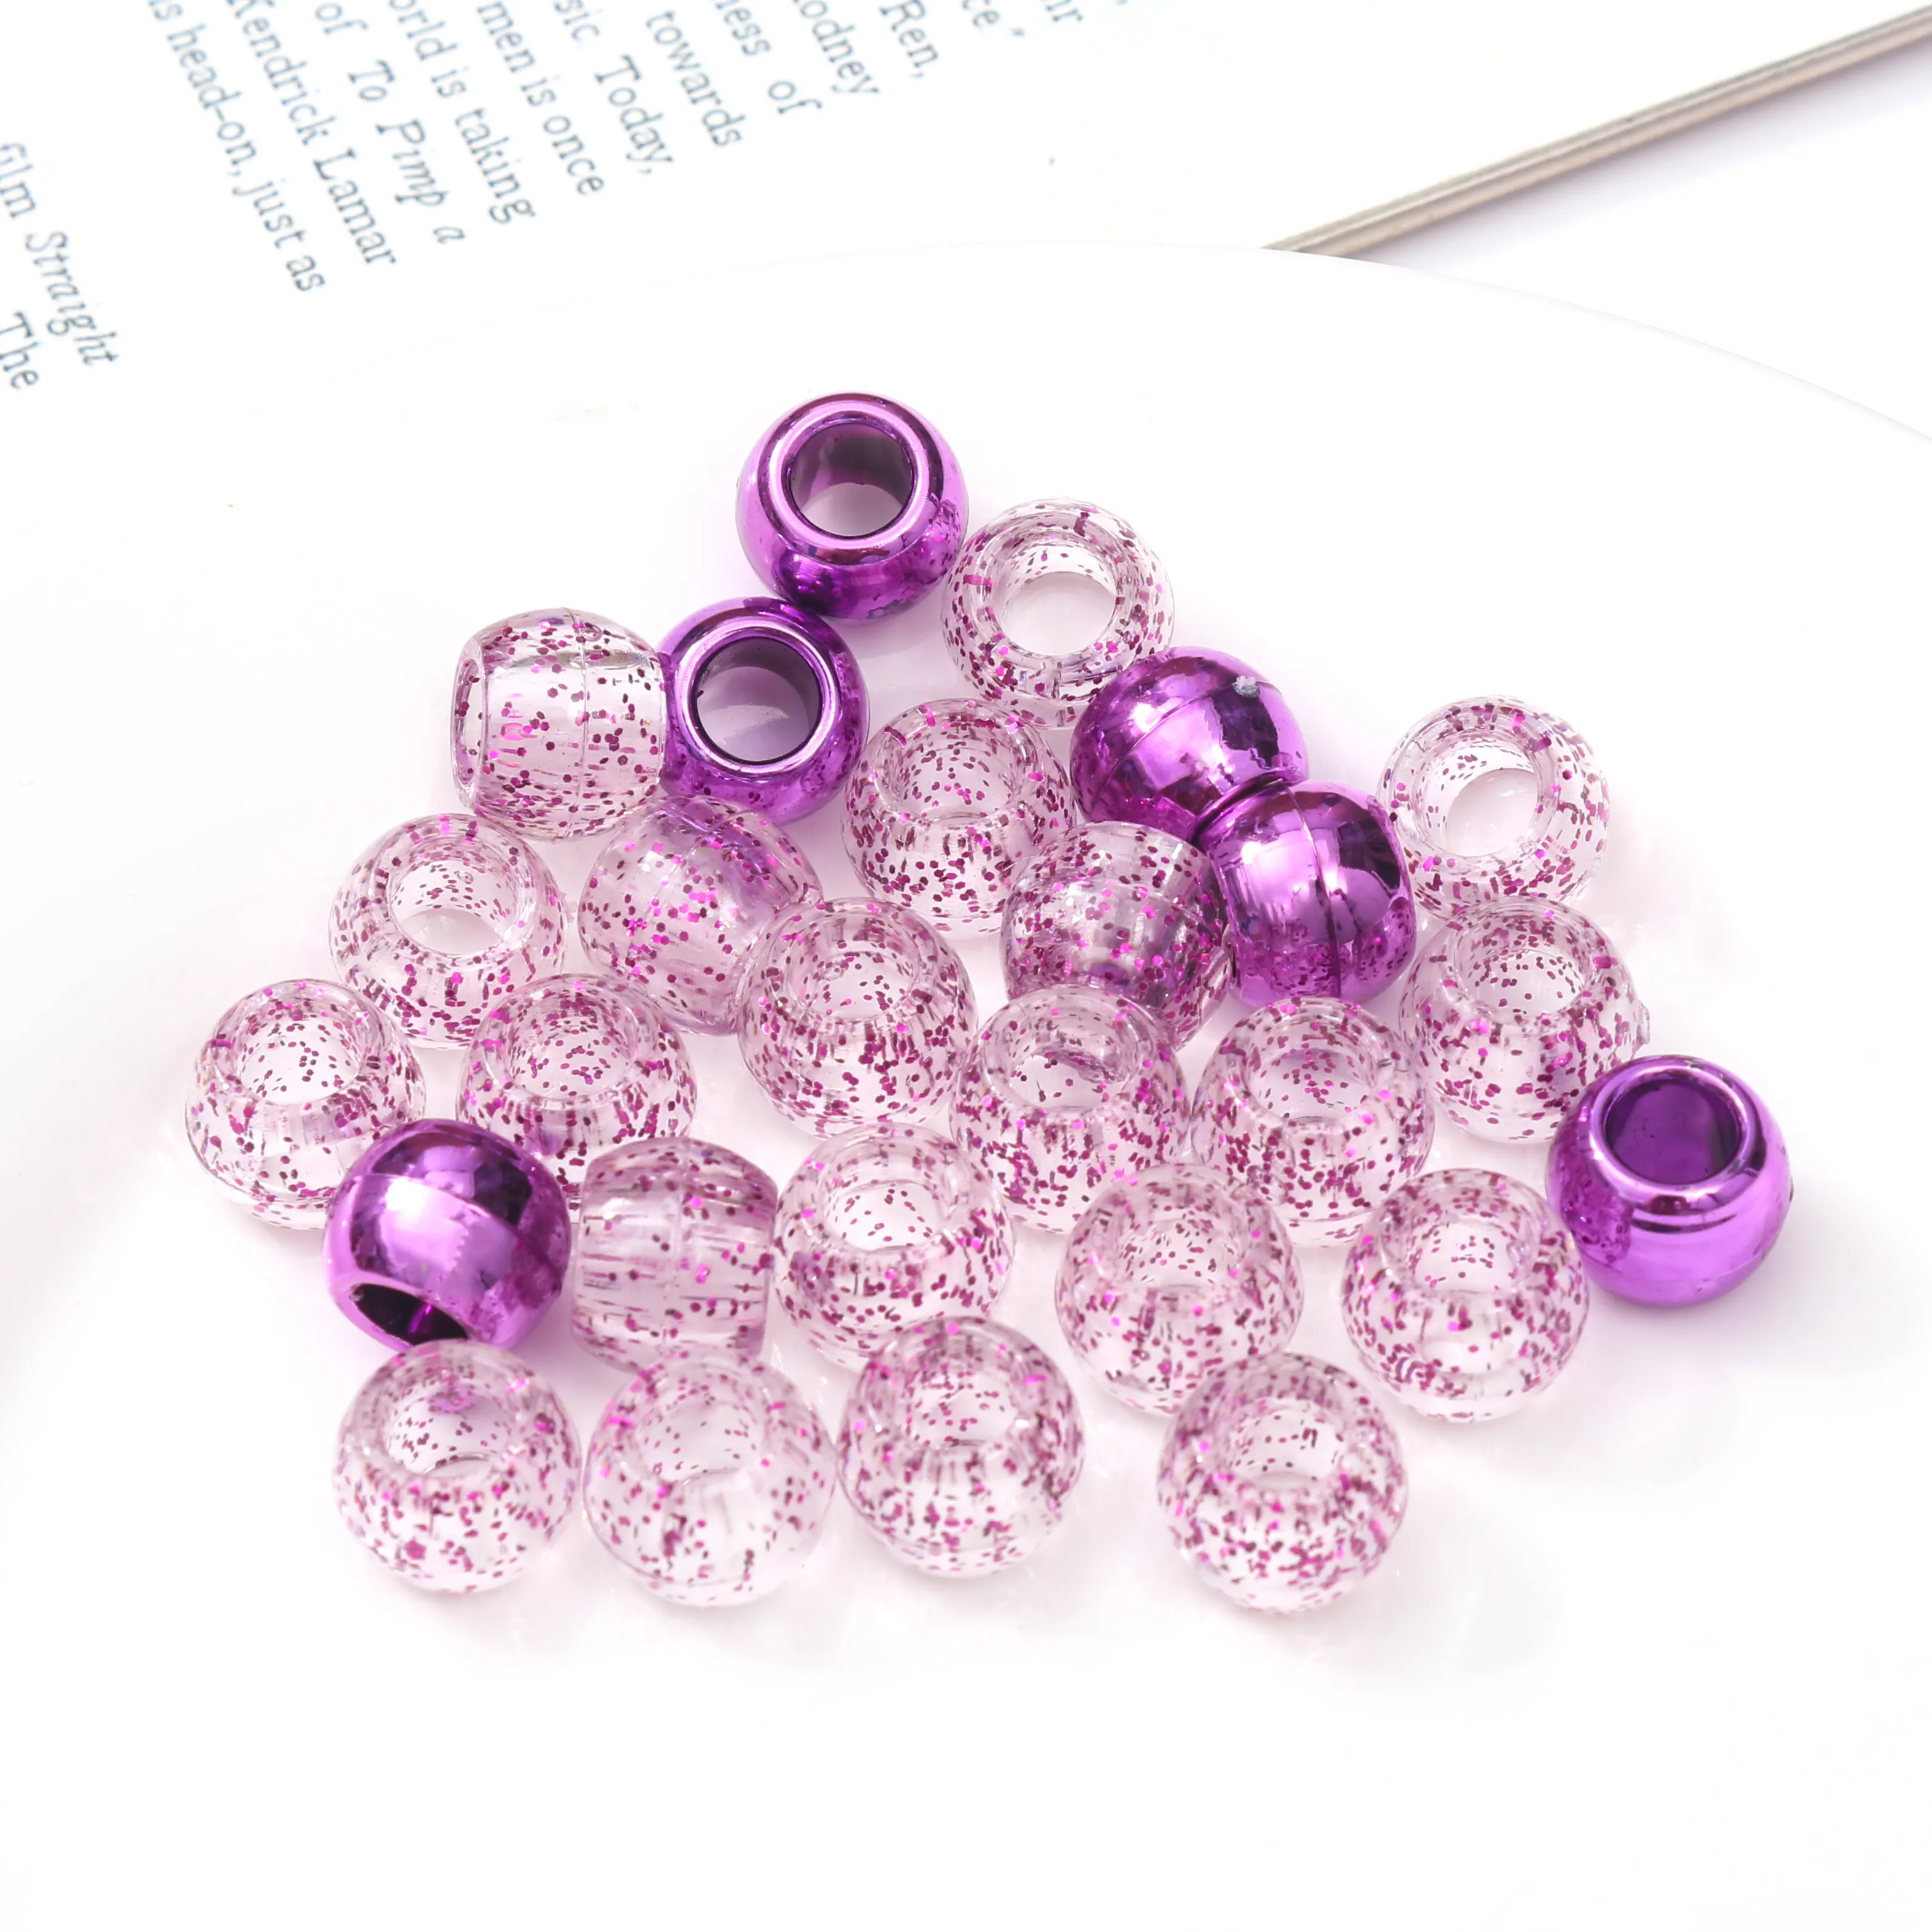 Perline all'ingrosso Kit per la creazione di gioielli ornamenti per intrecciare i capelli fai da te perline metalliche e Glitter per trecce anelli colorati